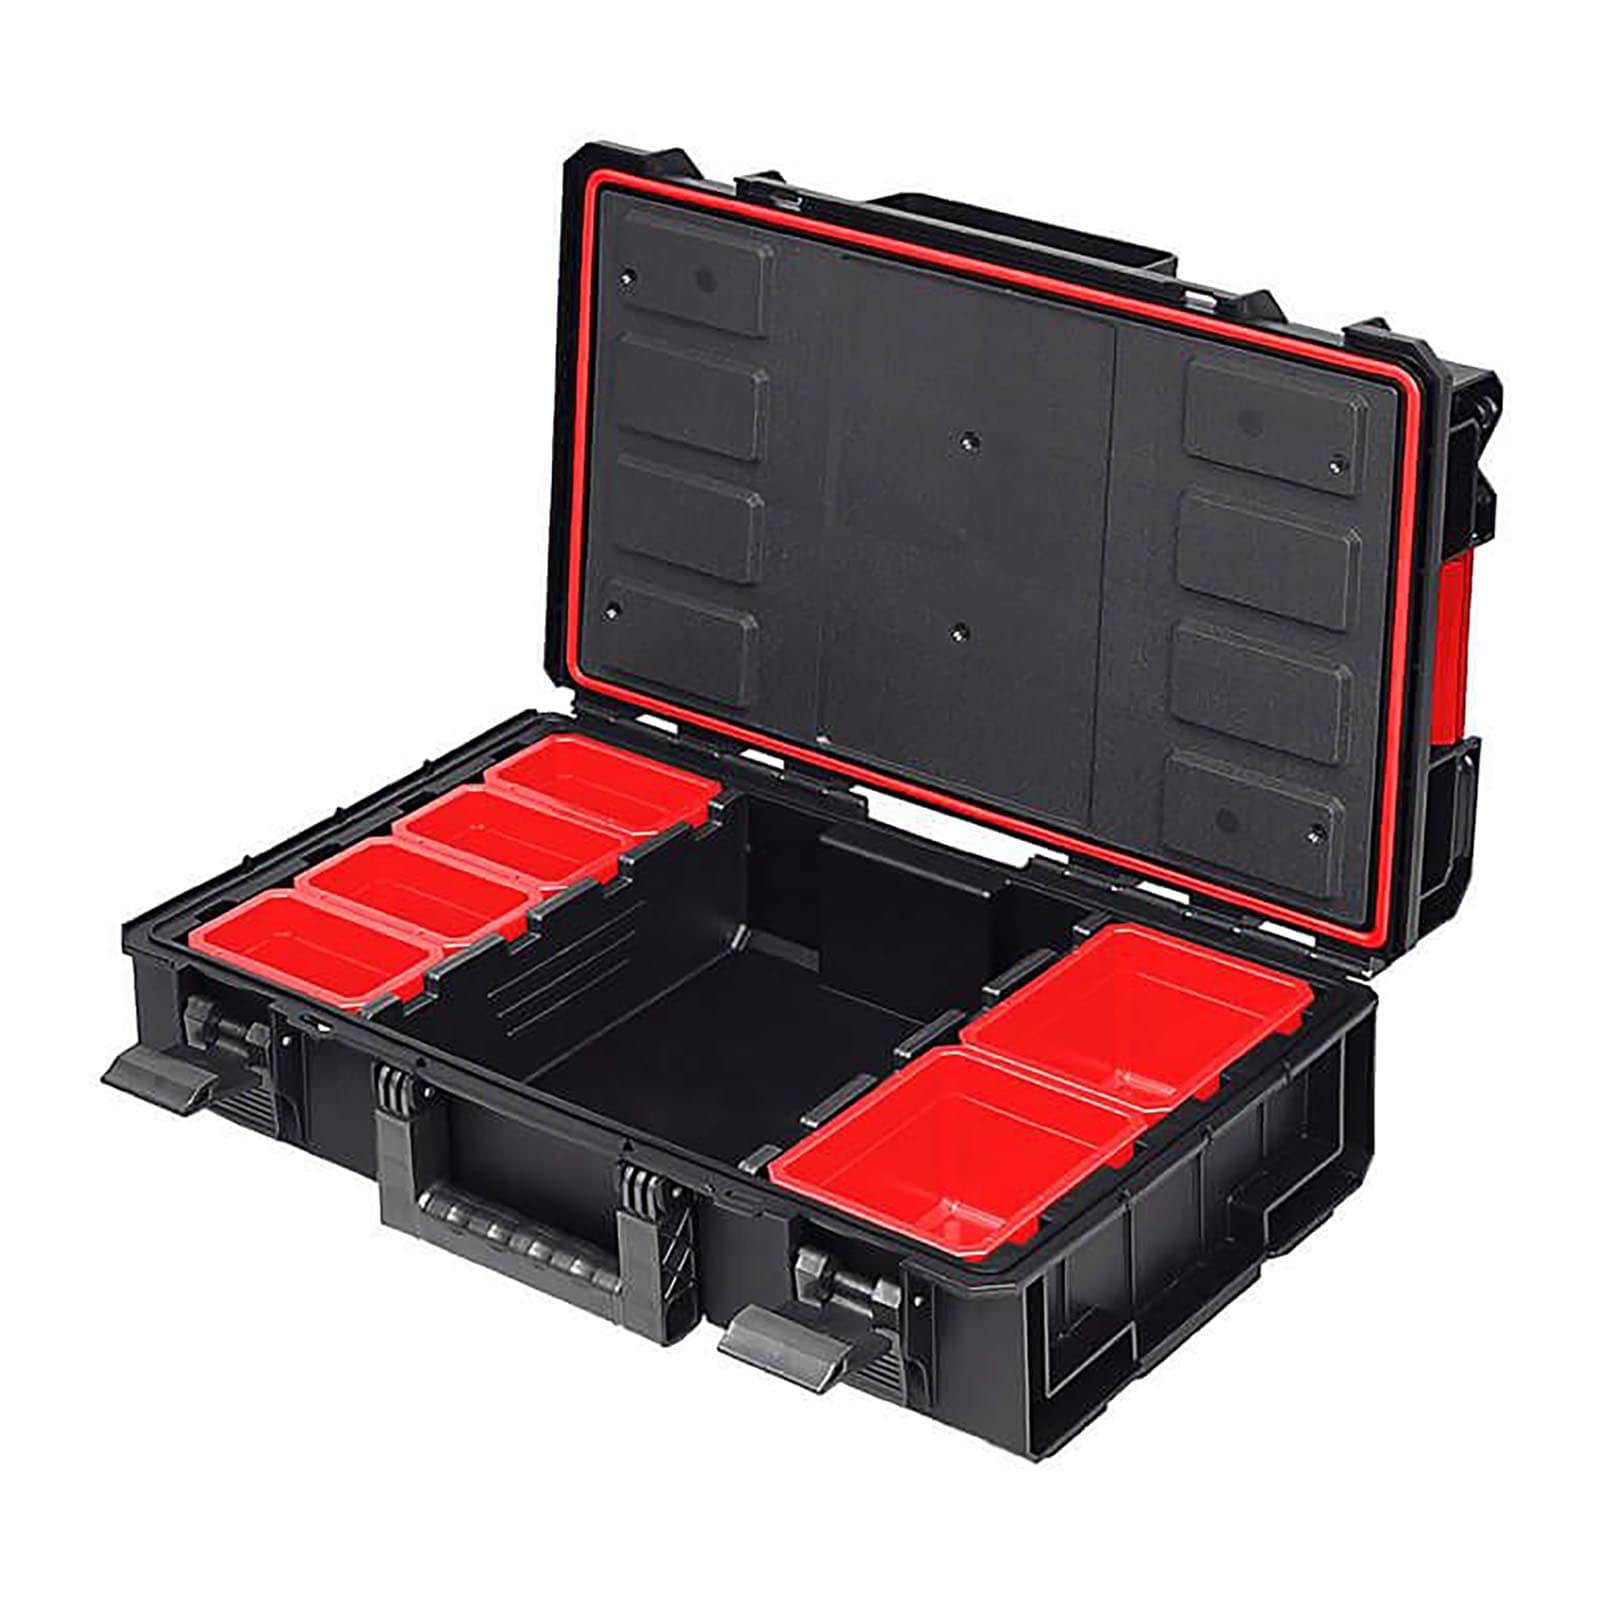 Caisse valise coffre boîte à outils à roulette rangement stockage 3 parties  92 cm